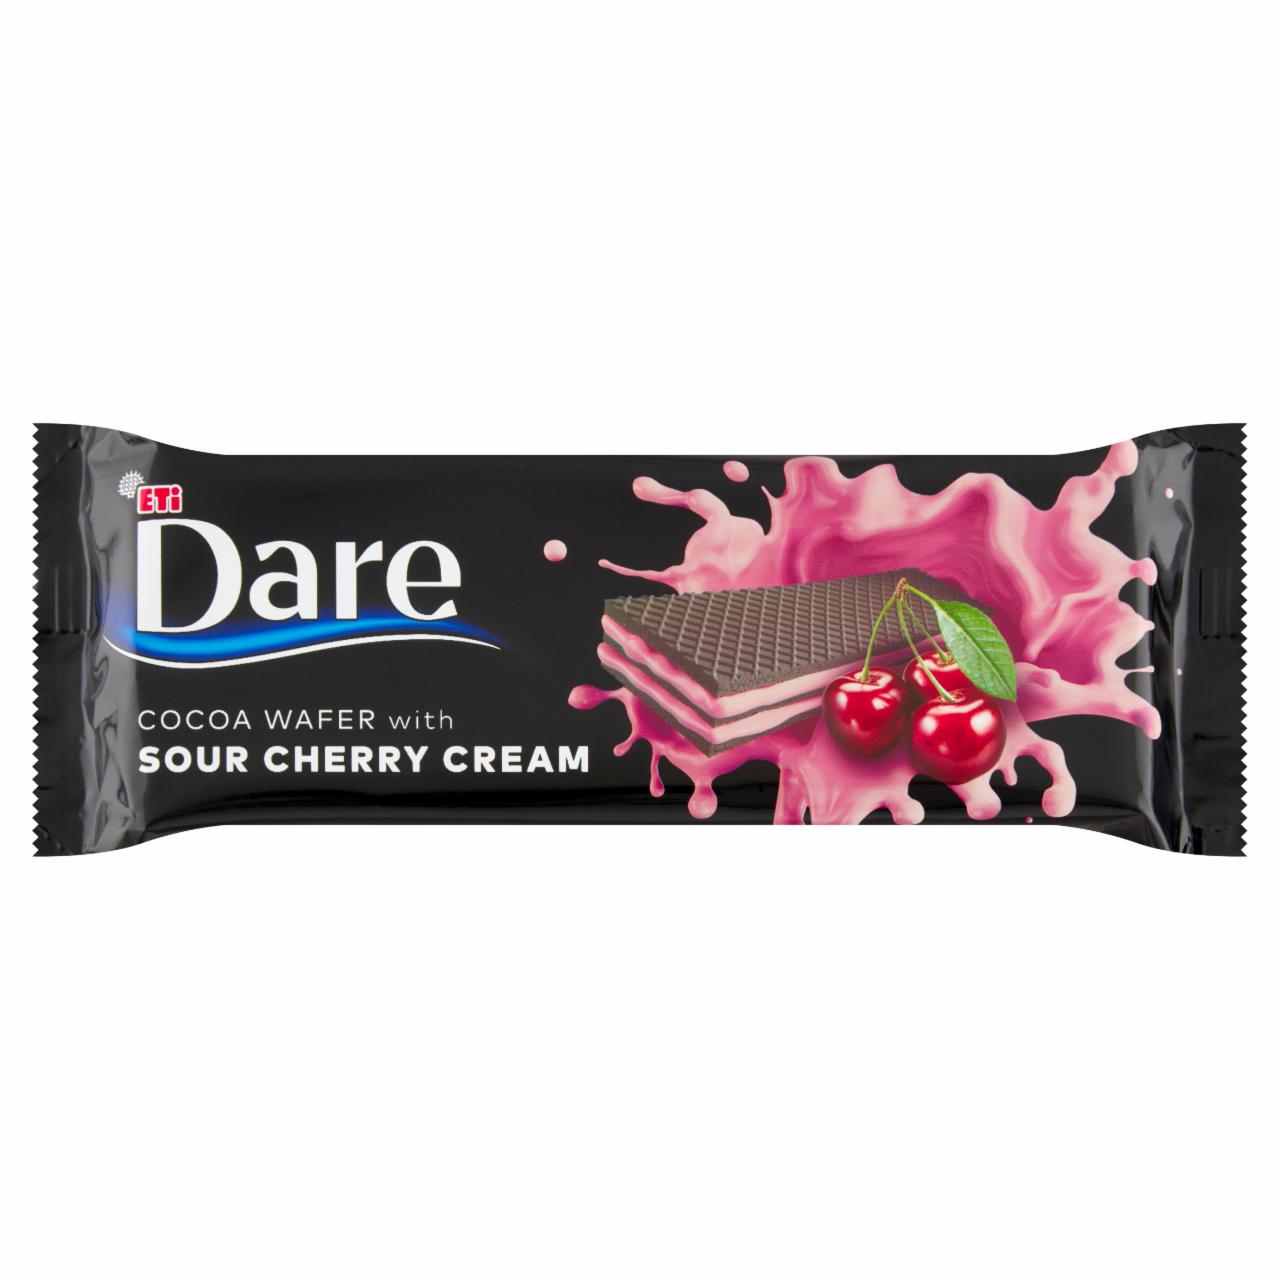 Fotografie - Dare Cocoa Wafer with Sour Cherry Cream Eti